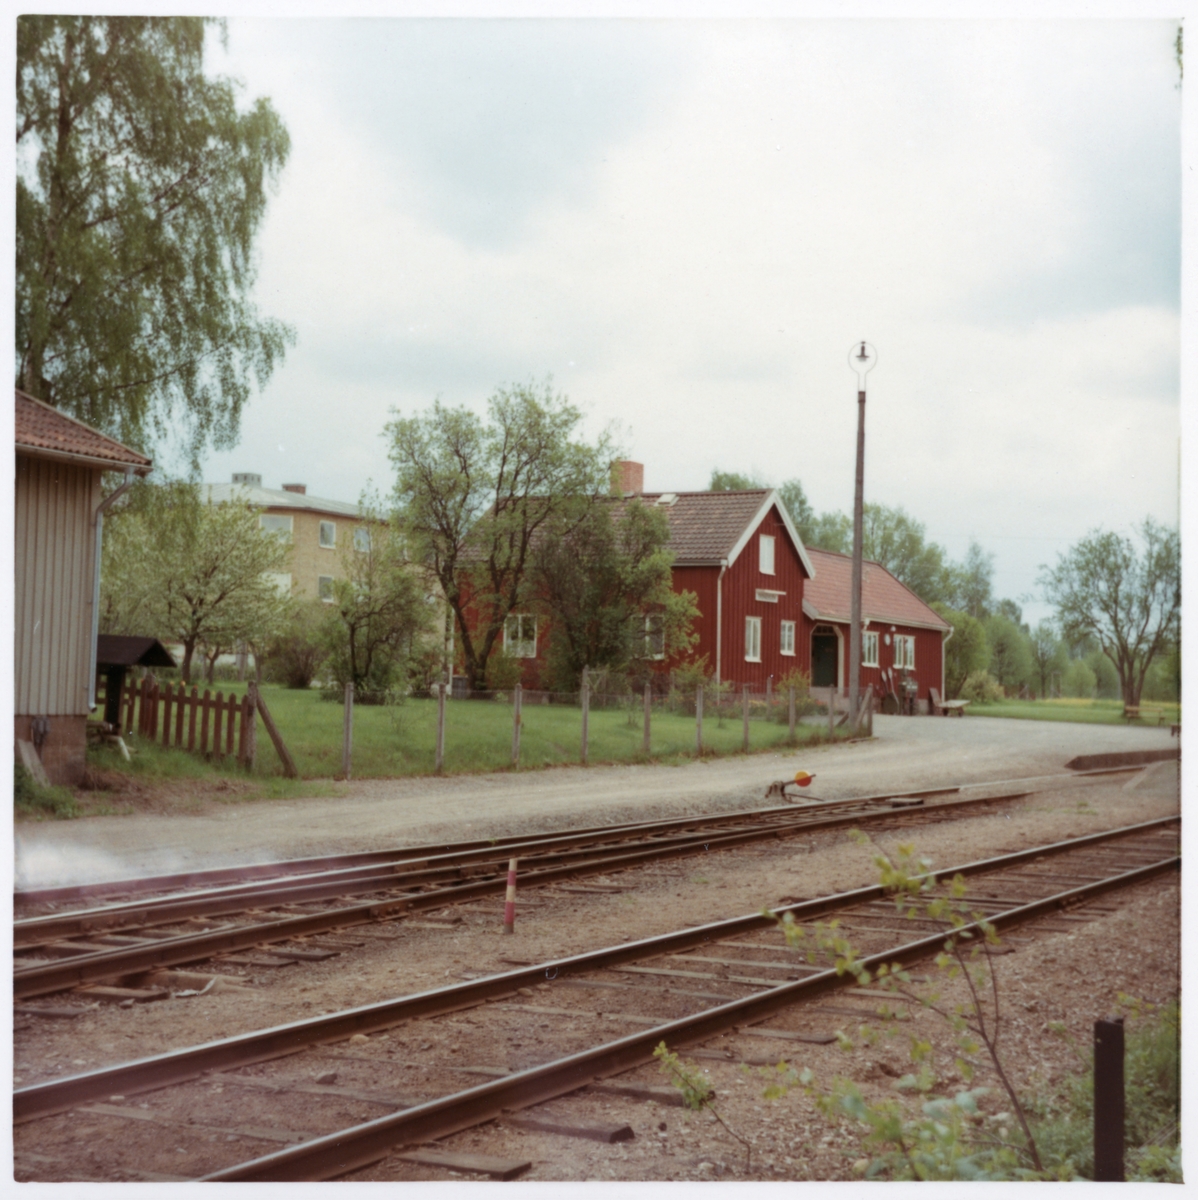 Station anlagd 1913. Envånings stationshus i trä, byggt i vinkel. Väntsalen och expeditionslokalerna moderniserades 1945, tjänstebostaden 1950.